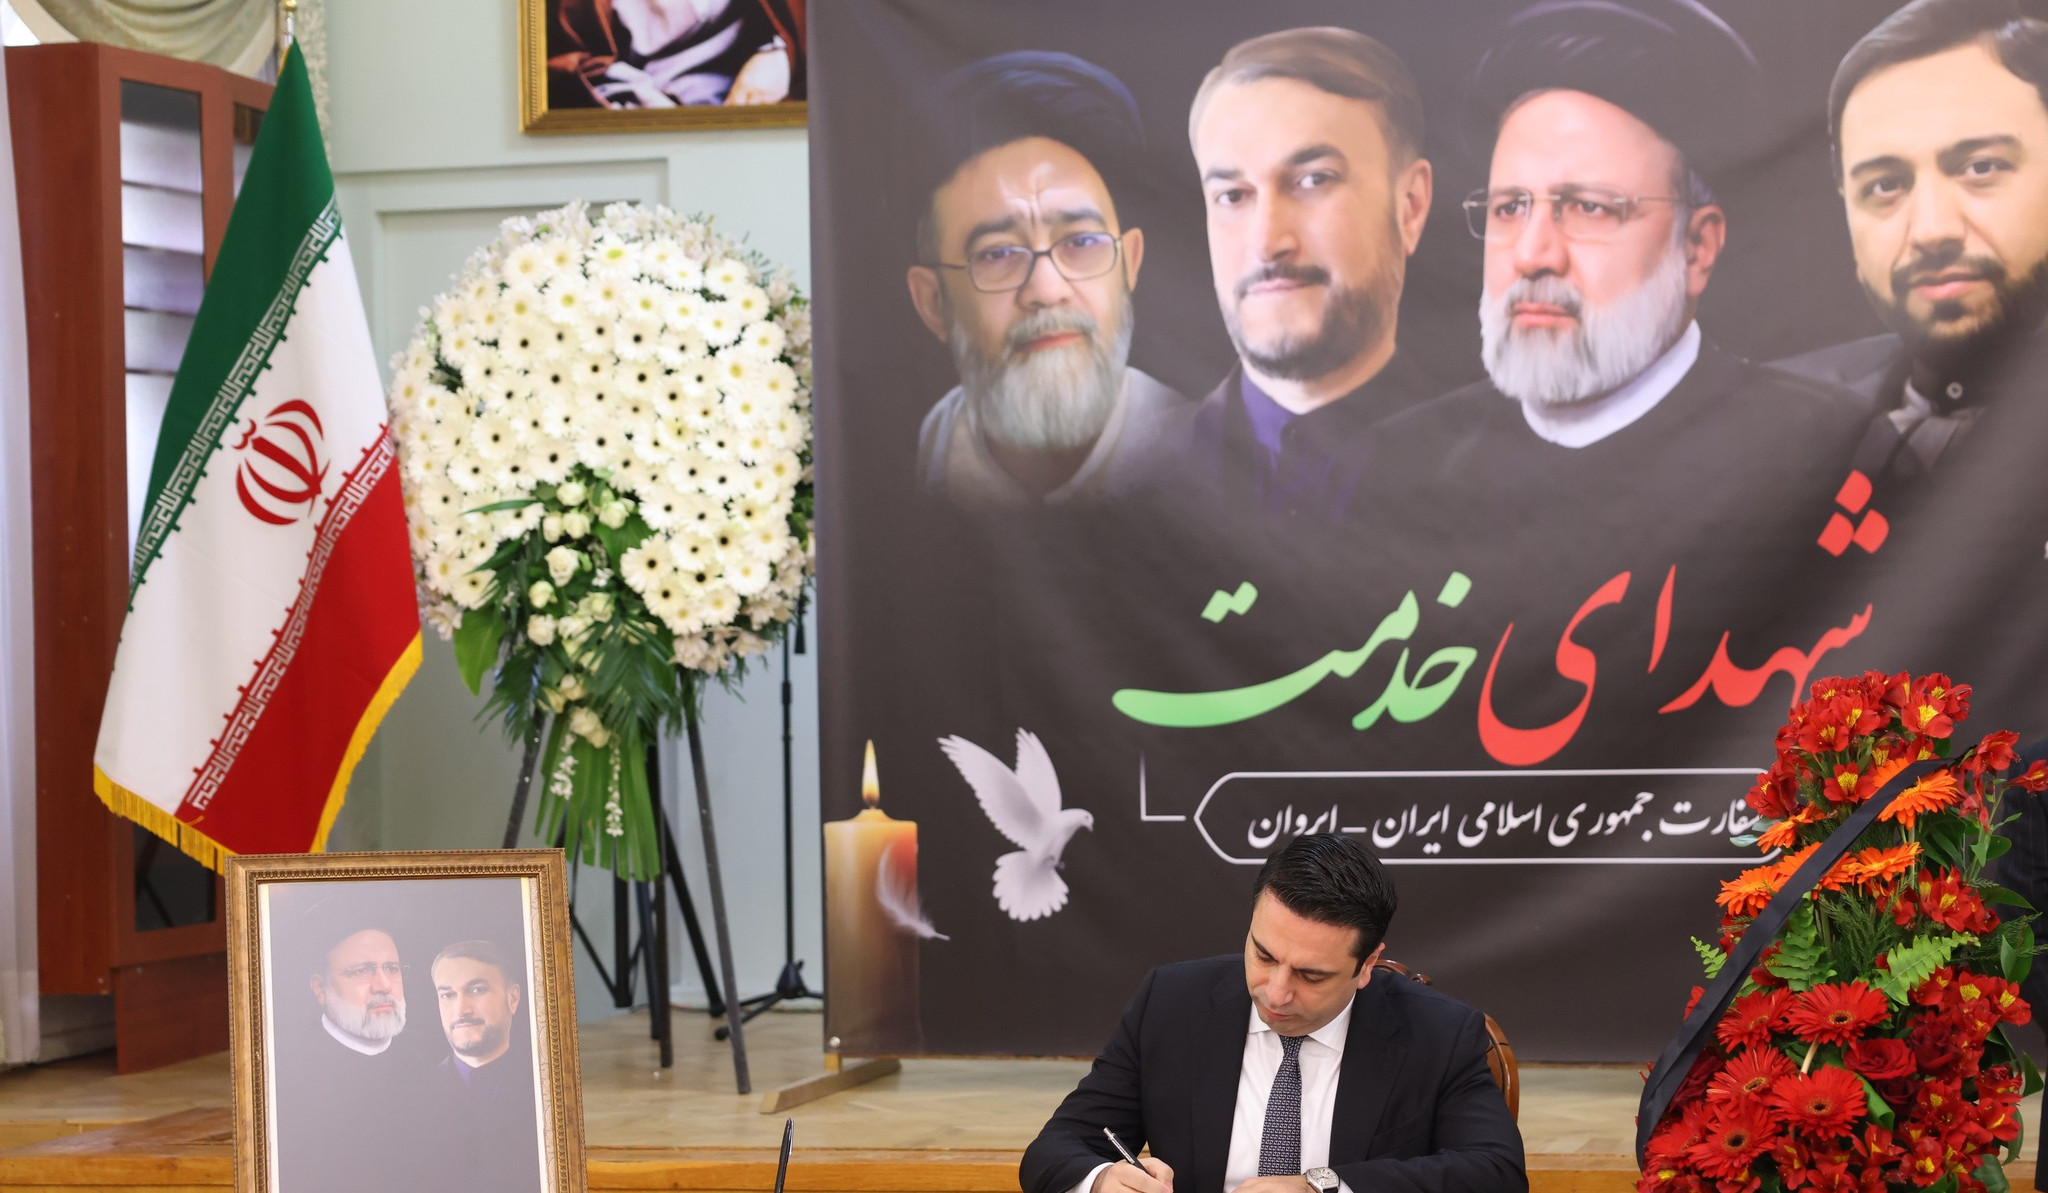 Спикер Национального собрания внес запись в Книгу собалезнования в связи со смертью президента Ирана и других высокопоставленных чиновников